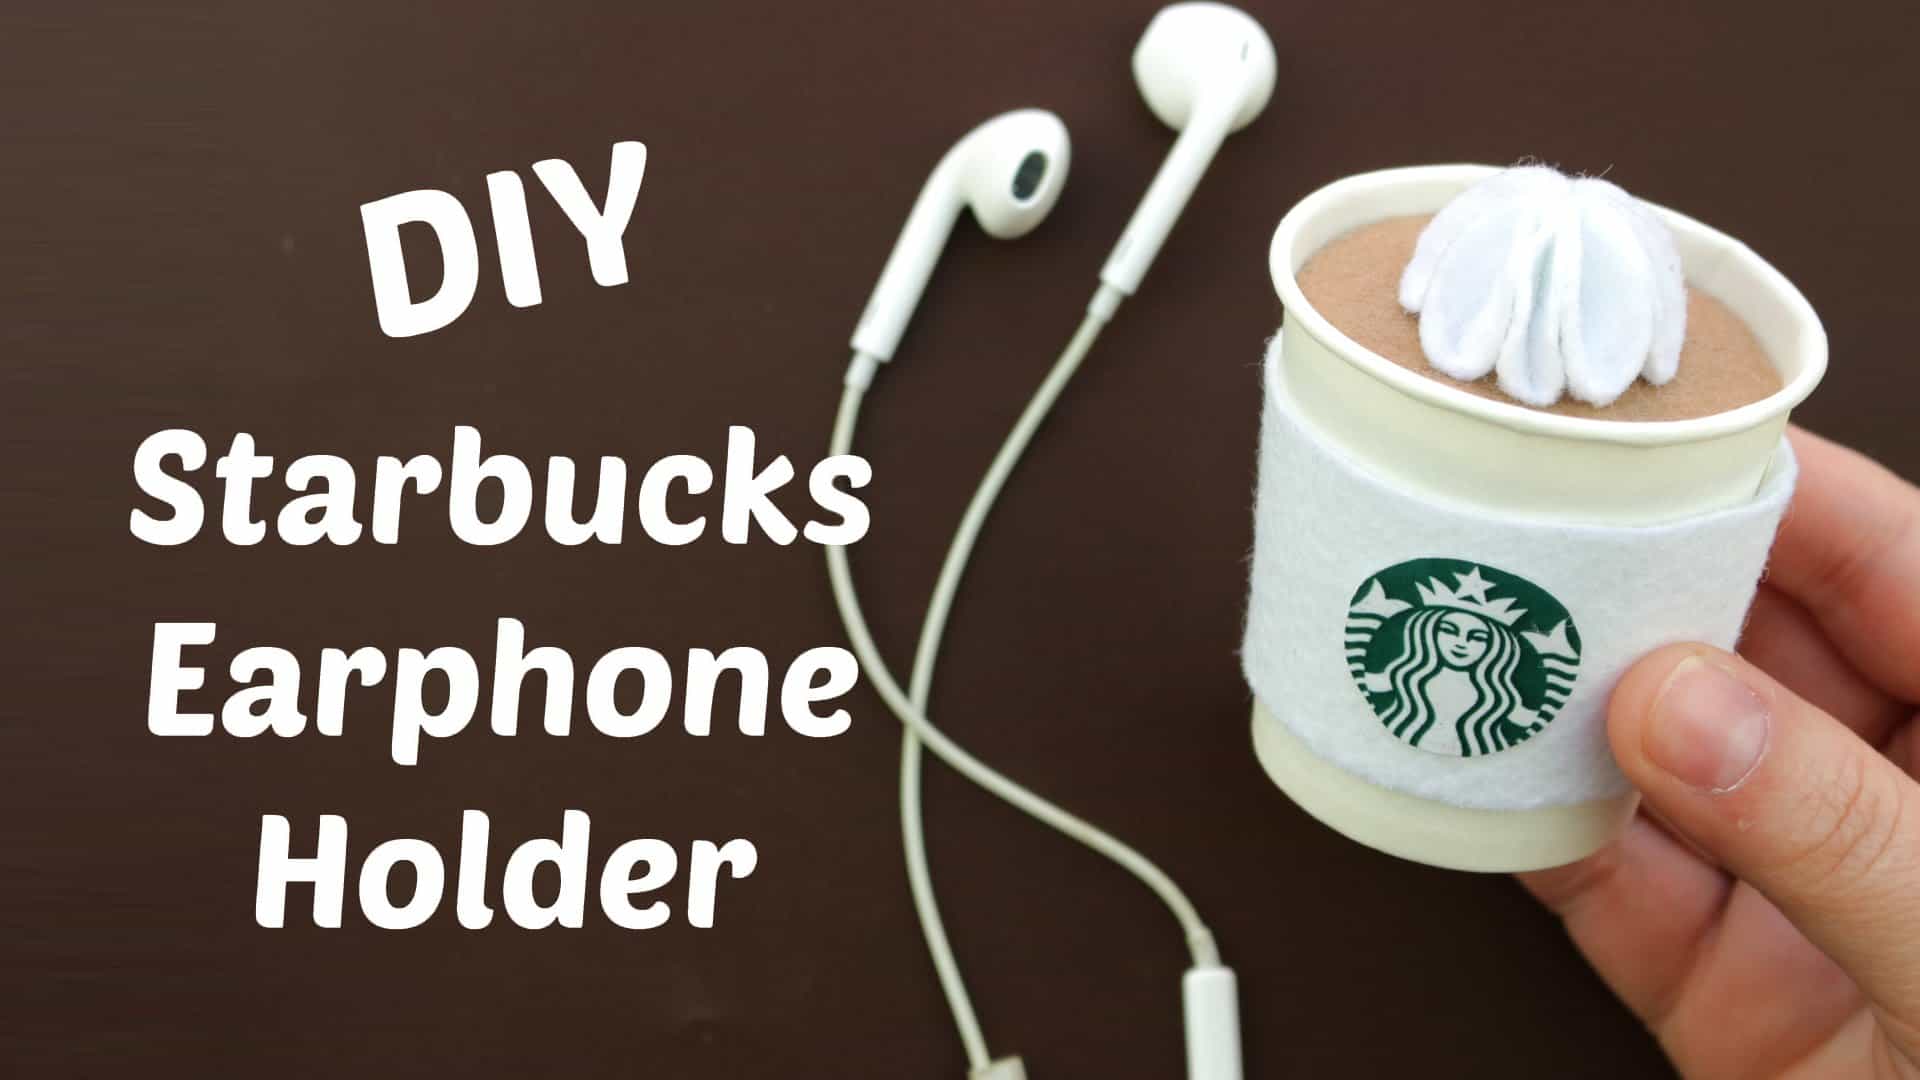 Starbucks earphone holder